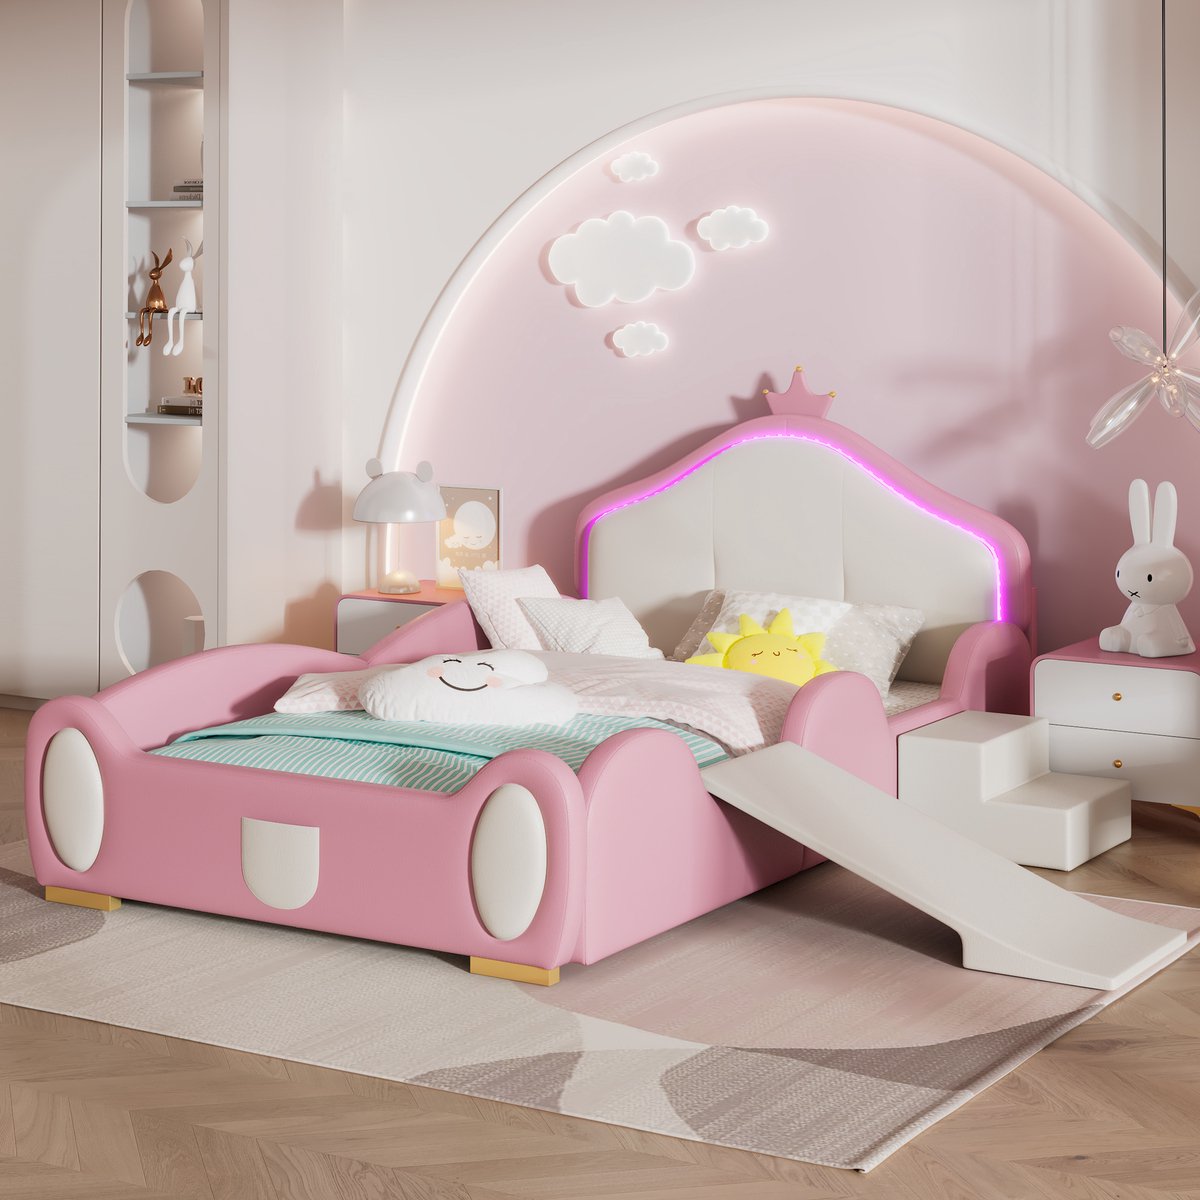 Crown Cartoon Bed met Multi-mode LED-strip - Gestoffeerd bed Kinderbed met kleine glijbaan en trap - Met beschermende zachte randen - Met houten latten - PU Roze + Beige - 90x200cm